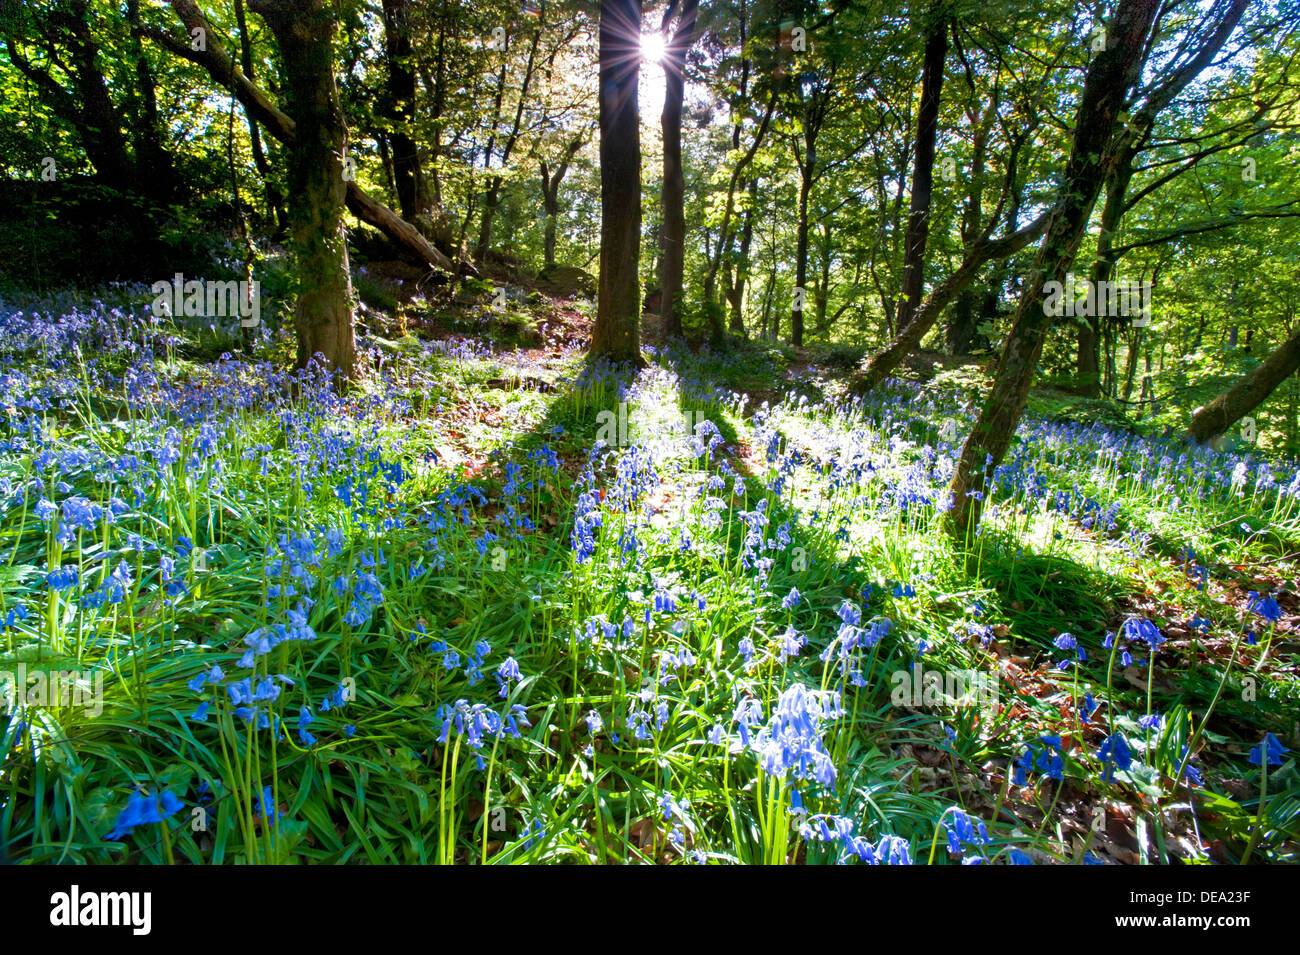 La luce del sole e le ombre in un bosco Bluebell, England, Regno Unito Foto Stock